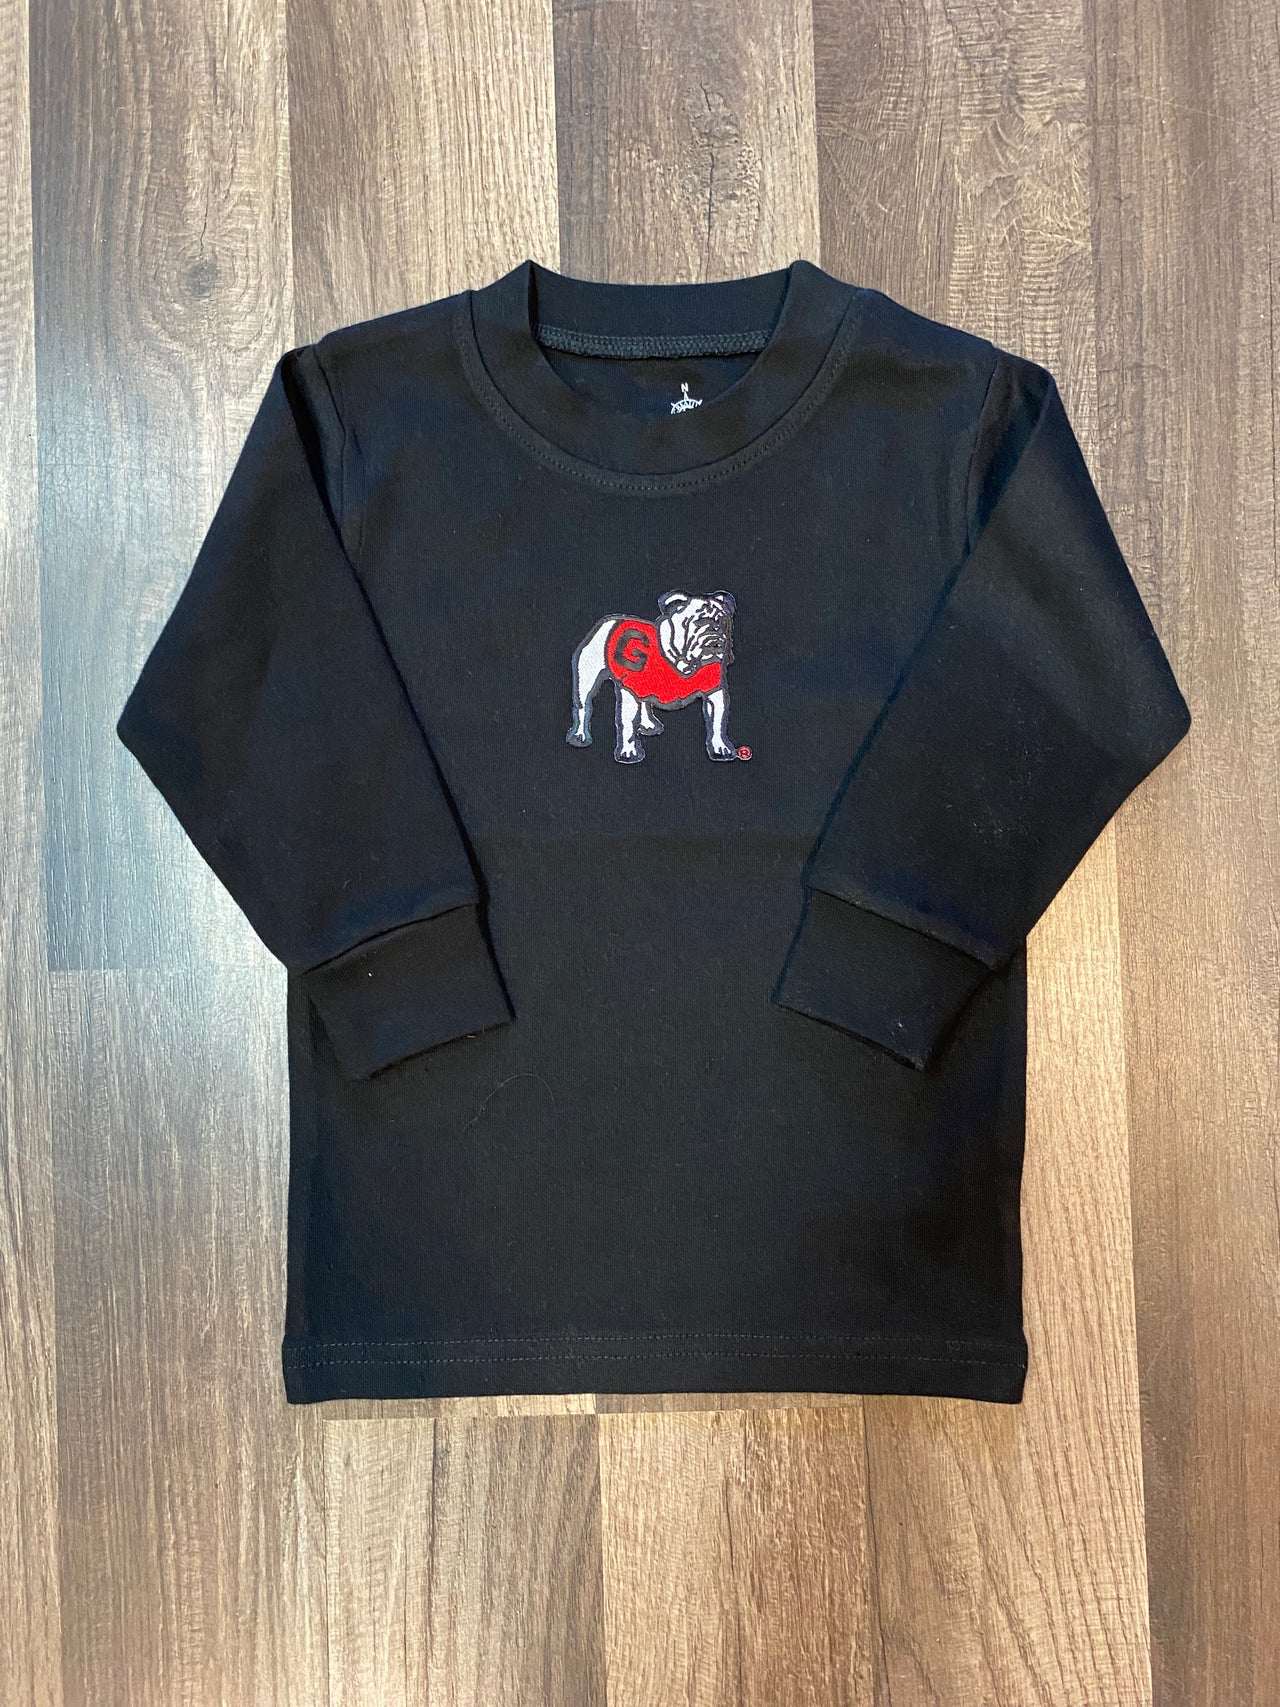 Toddler. Long Sleeve Tee. Black. UGA Standing Dog Logo